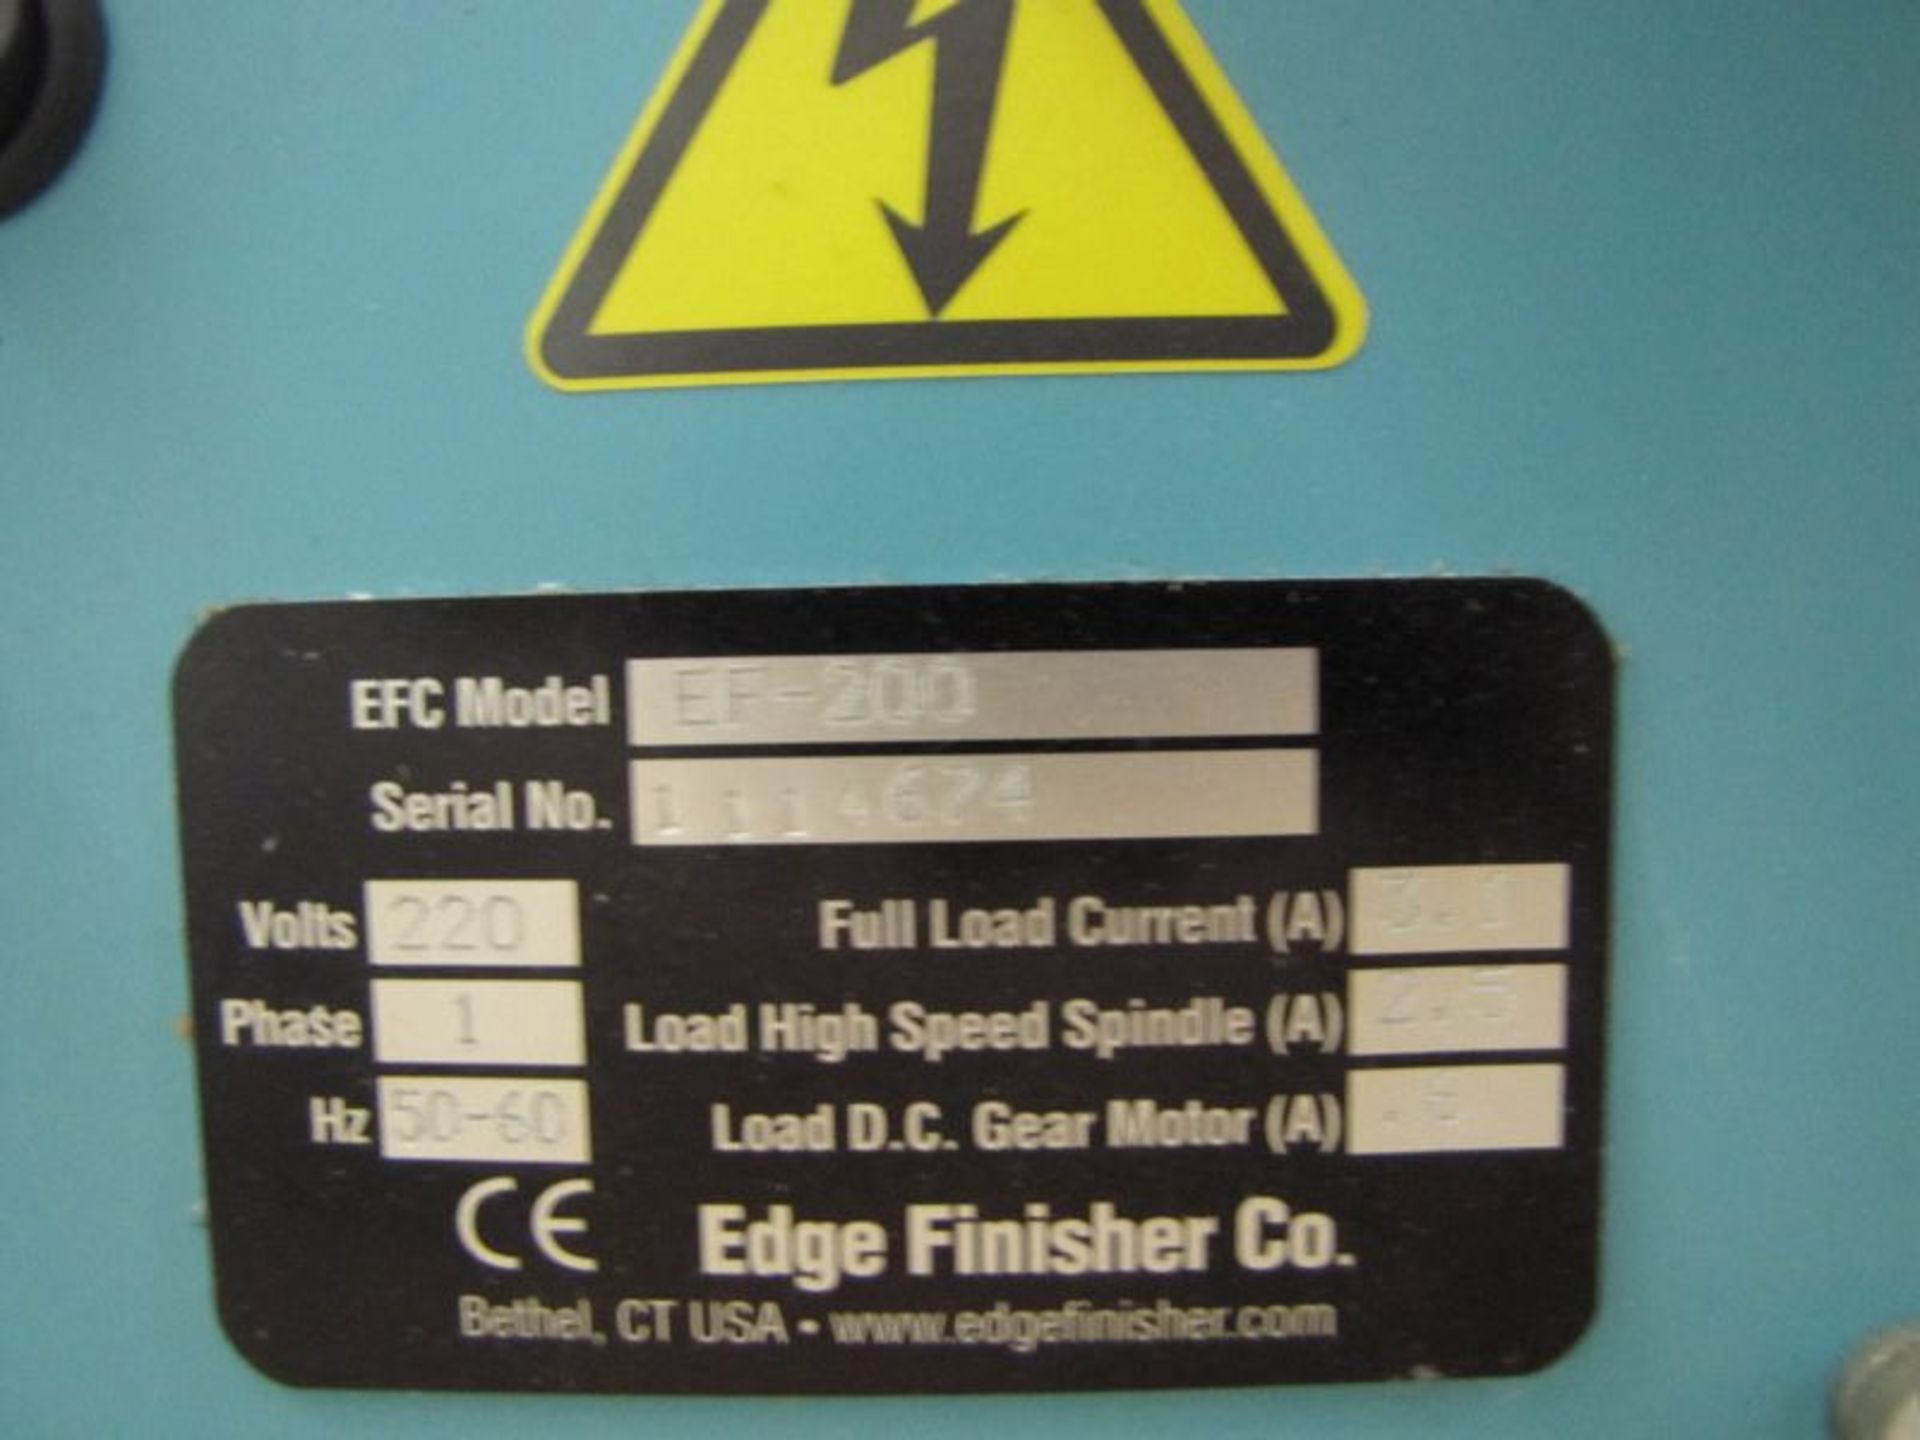 Edge Finisher Company EF-200 - Image 5 of 5